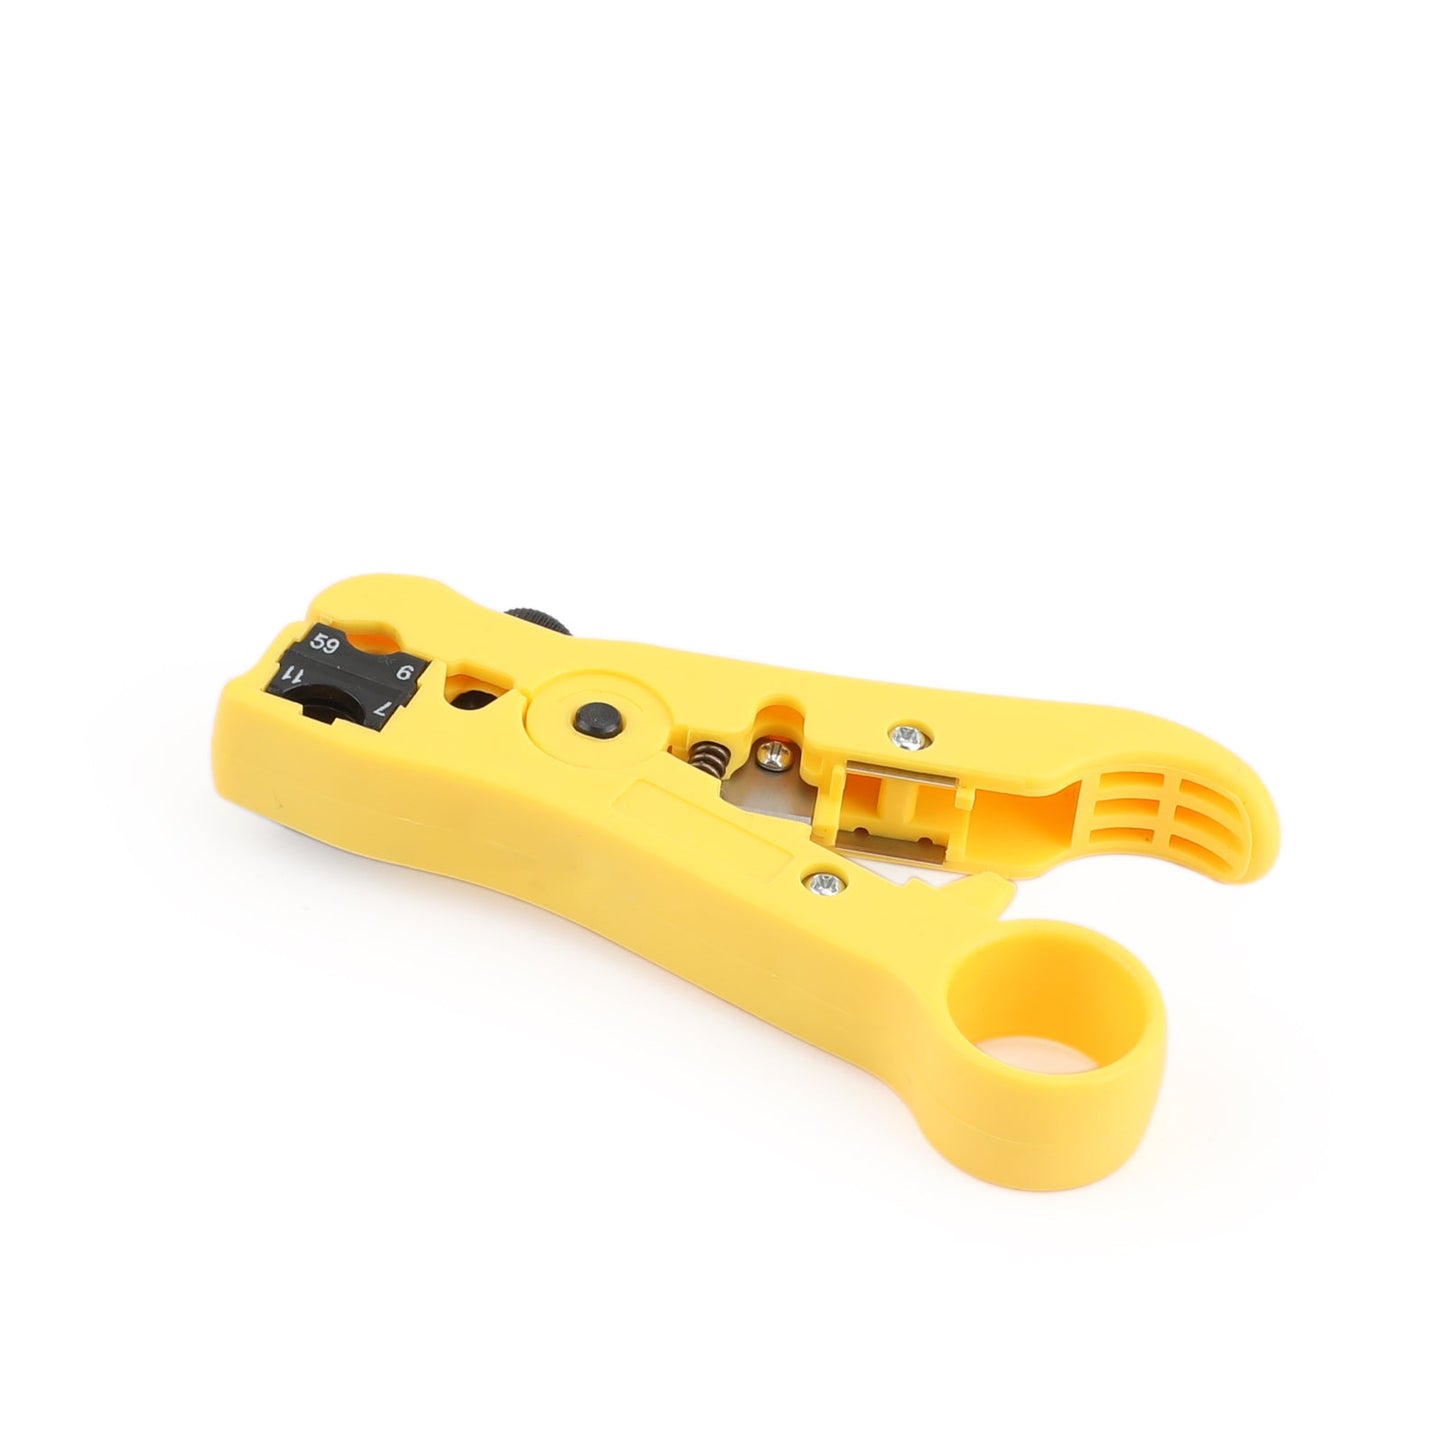 Coaxial Compression Tool Coax Cable Crimper Kit Adjustable RG6 RG59 RG11 75-5-7